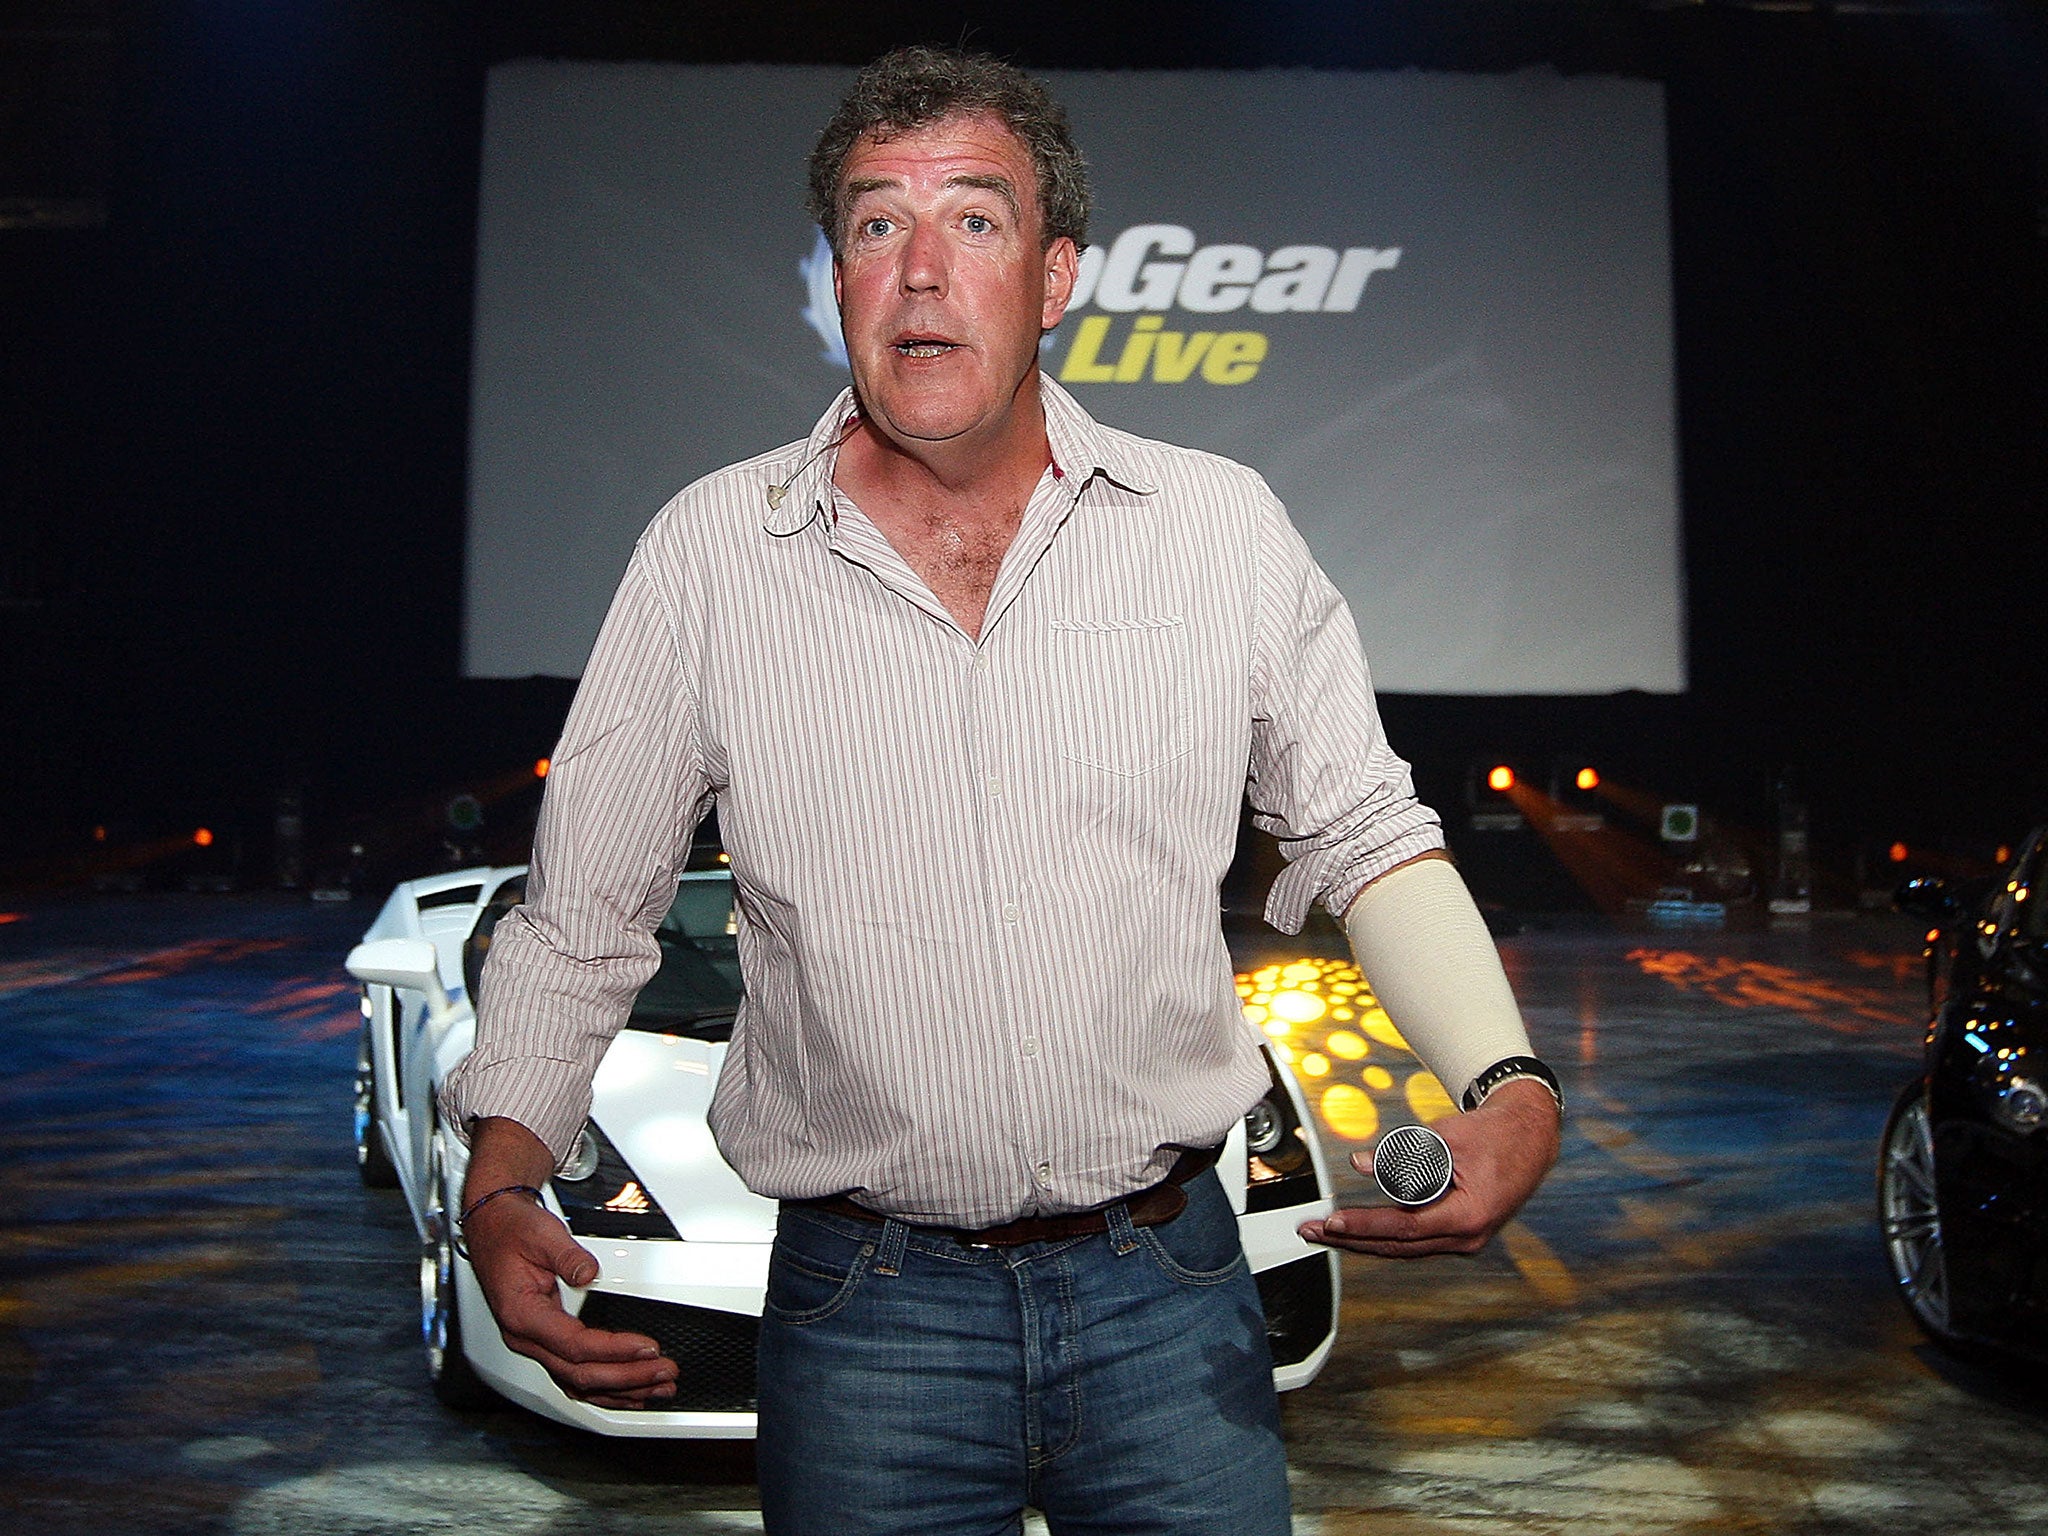 Top Gear star Jeremy Clarkson